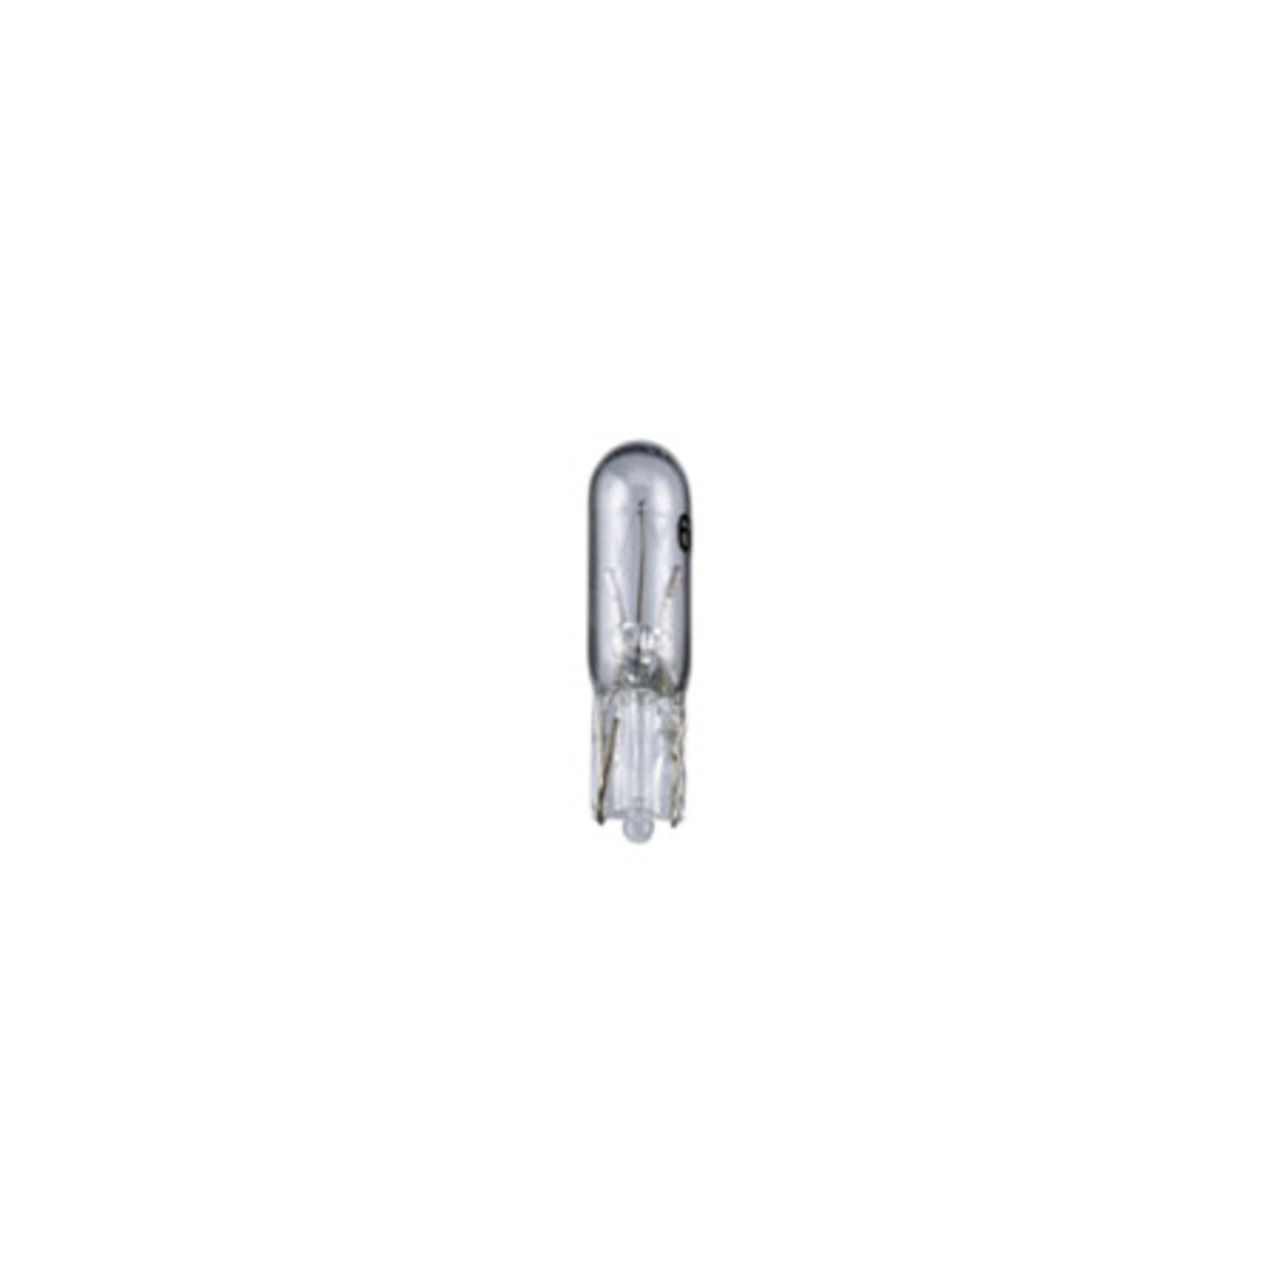 Glassockellampe Sockel W2x4-6d- 5 x 20 mm- 12 V- 1-2 W